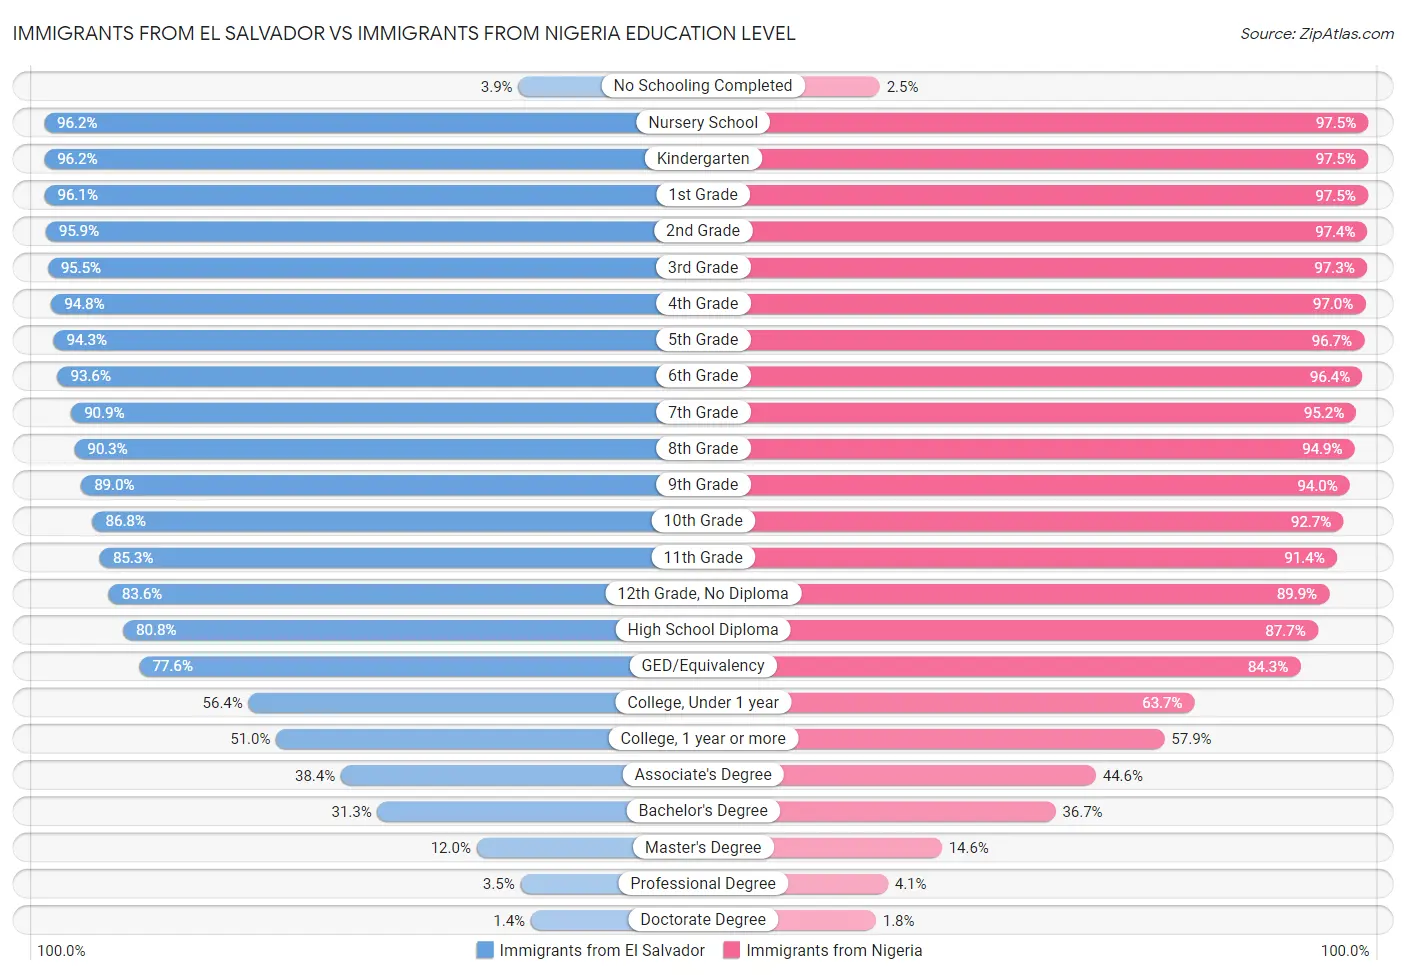 Immigrants from El Salvador vs Immigrants from Nigeria Education Level